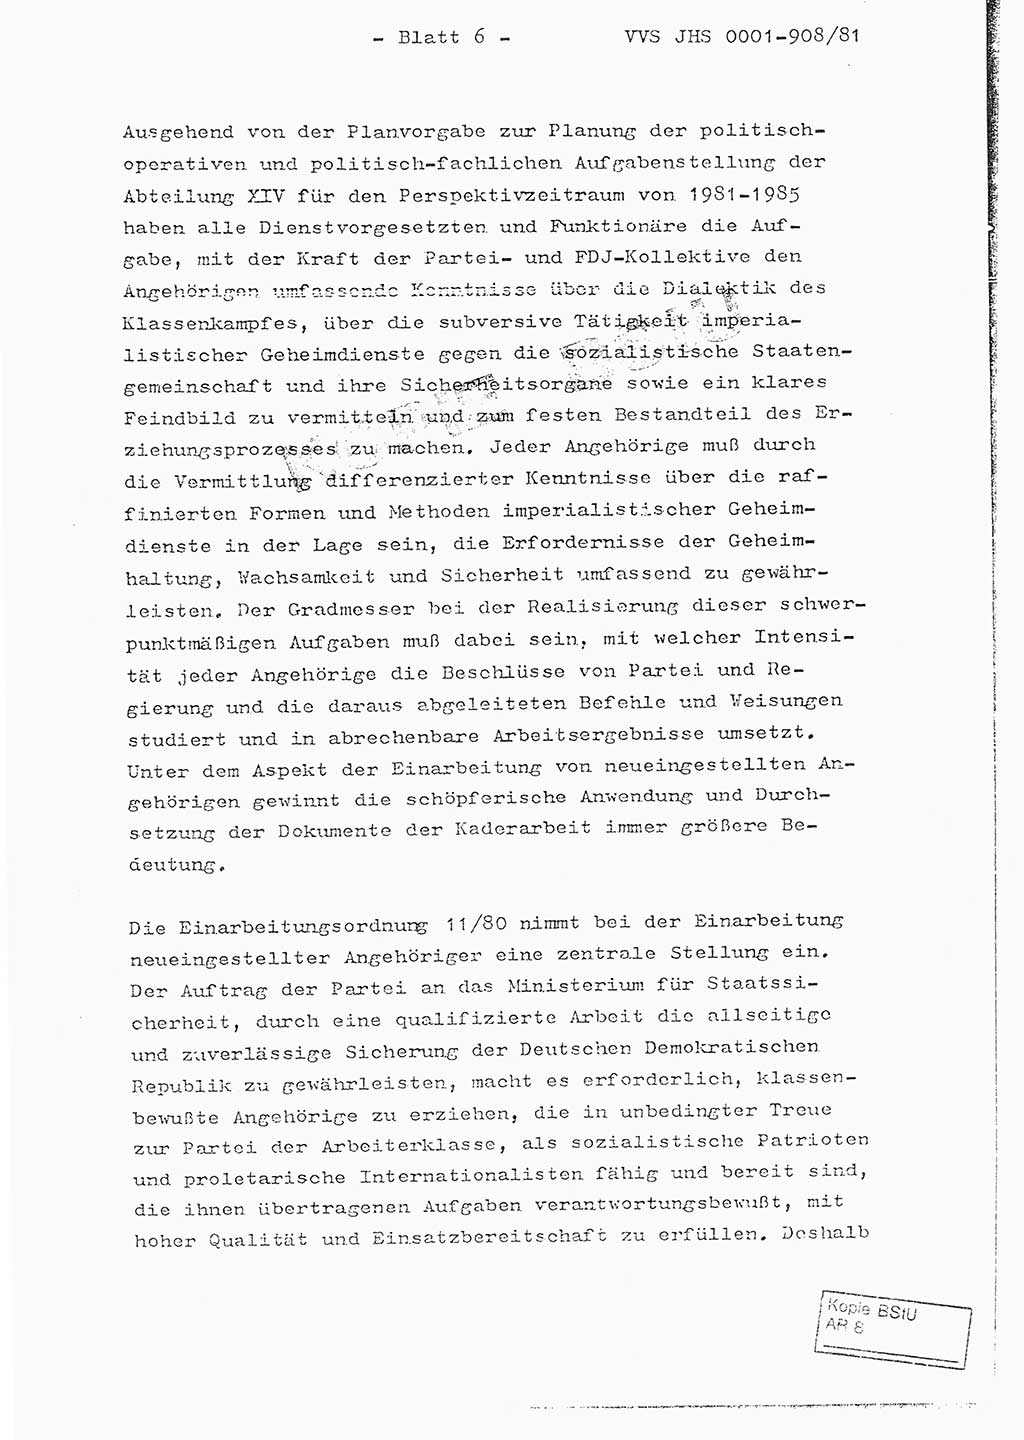 Fachschulabschlußarbeit Oberleutnant Wolfgang Wittmann (Abt. ⅩⅣ), Ministerium für Staatssicherheit (MfS) [Deutsche Demokratische Republik (DDR)], Juristische Hochschule (JHS), Vertrauliche Verschlußsache (VVS) o001-908/82, Potsdam 1982, Blatt 6 (FS-Abschl.-Arb. MfS DDR JHS VVS o001-908/82 1982, Bl. 6)